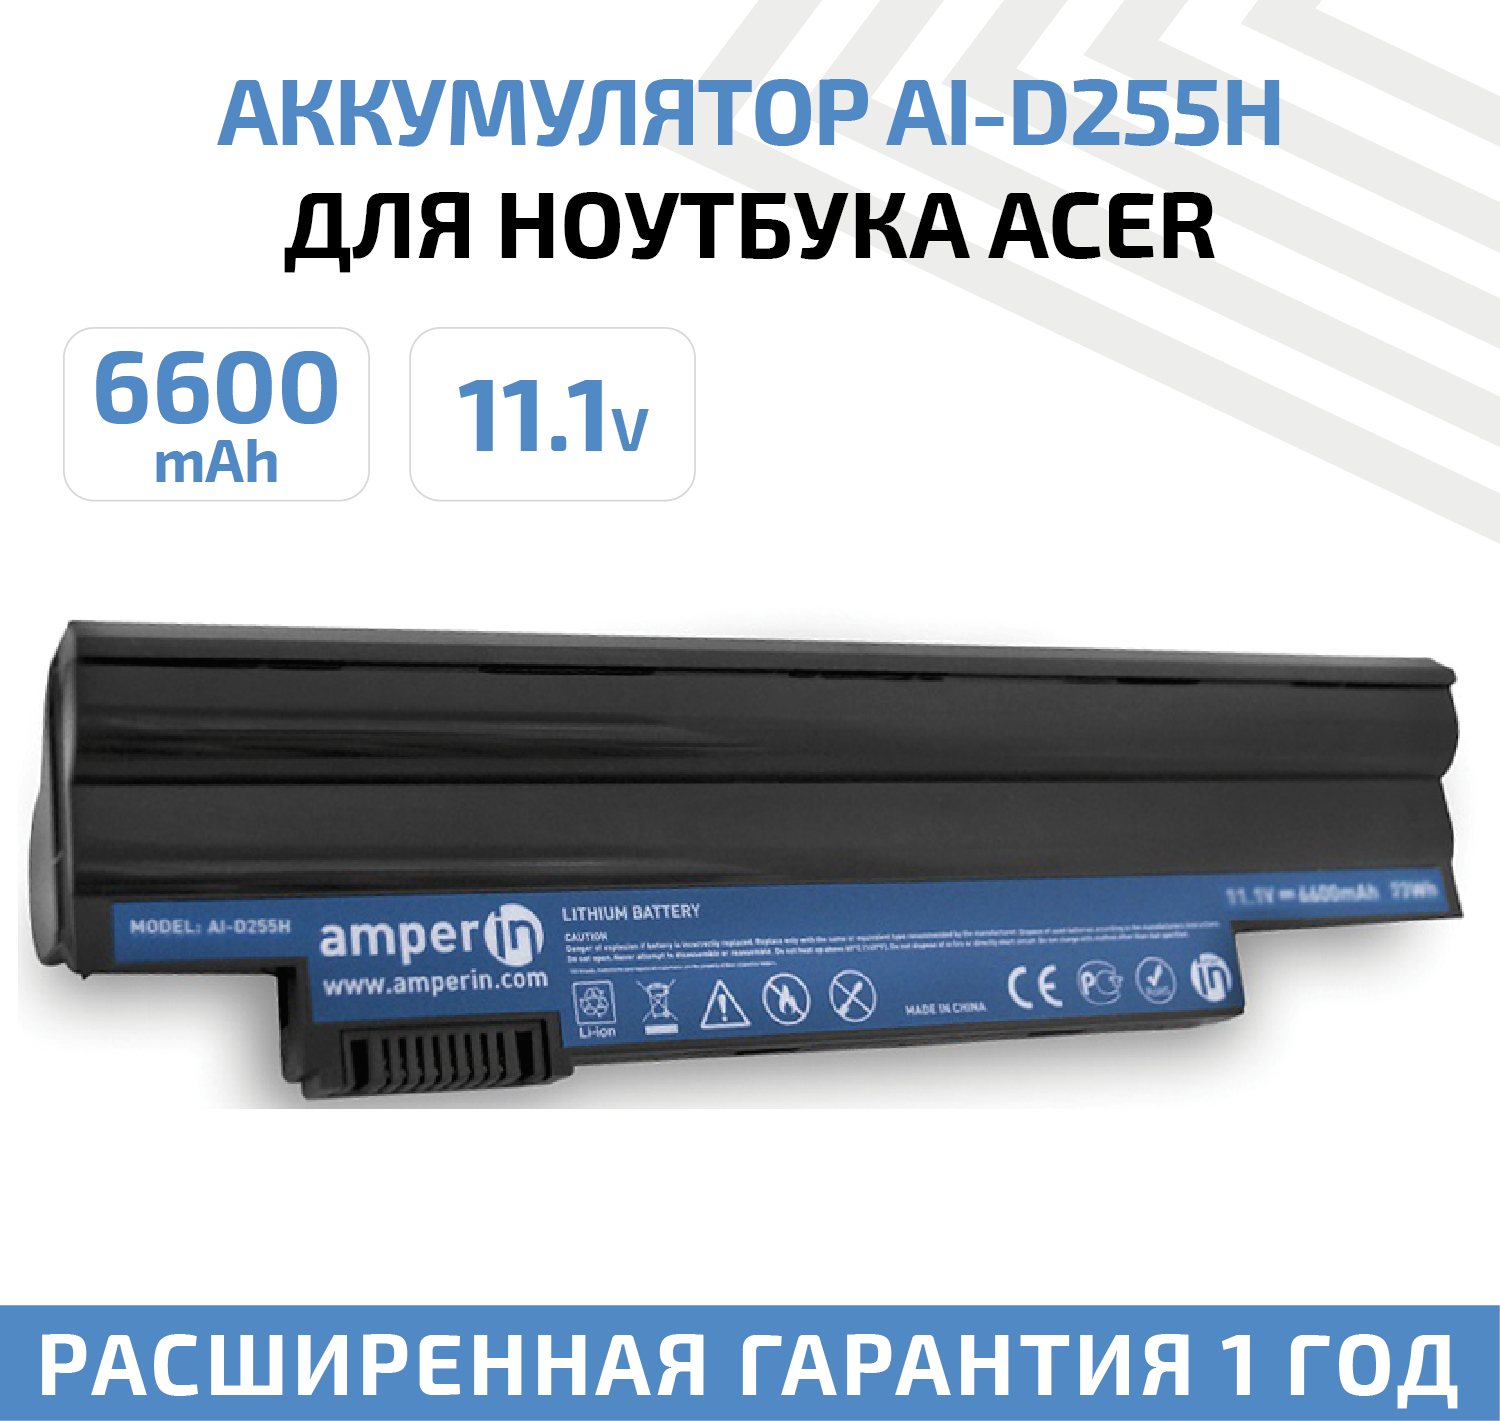 Аккумулятор (АКБ, аккумуляторная батарея) Amperin AI-D255H для ноутбука Acer Aspire One D255, 11.1В, 6600мАч, 73Вт